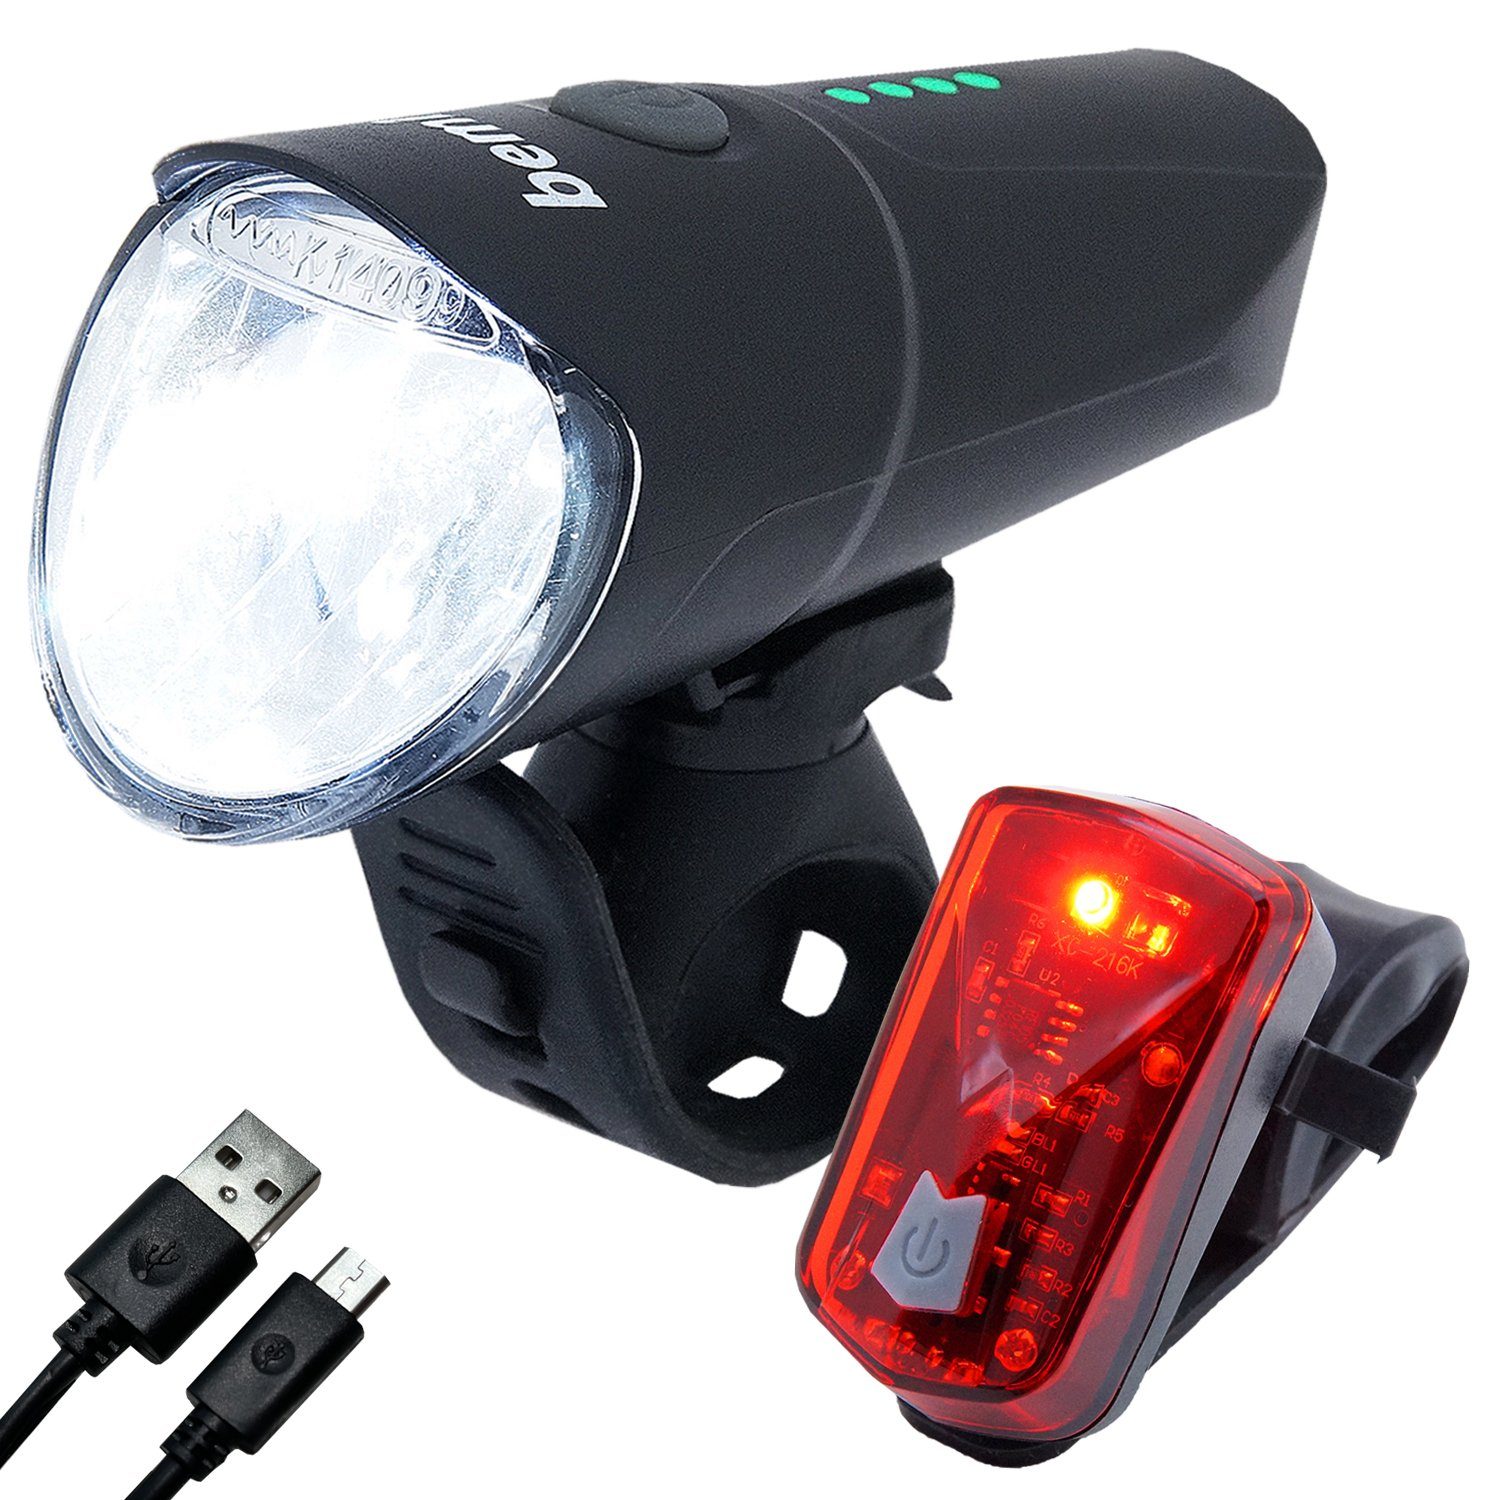 bemiX Fahrradbeleuchtung LED Fahrradlicht Set USB Akku 60 Lux  Wiederaufladbar Fahrradlampen Set Frontlicht mit OSRAM LED & Rücklicht  StVZO zugelassen abnehmbar